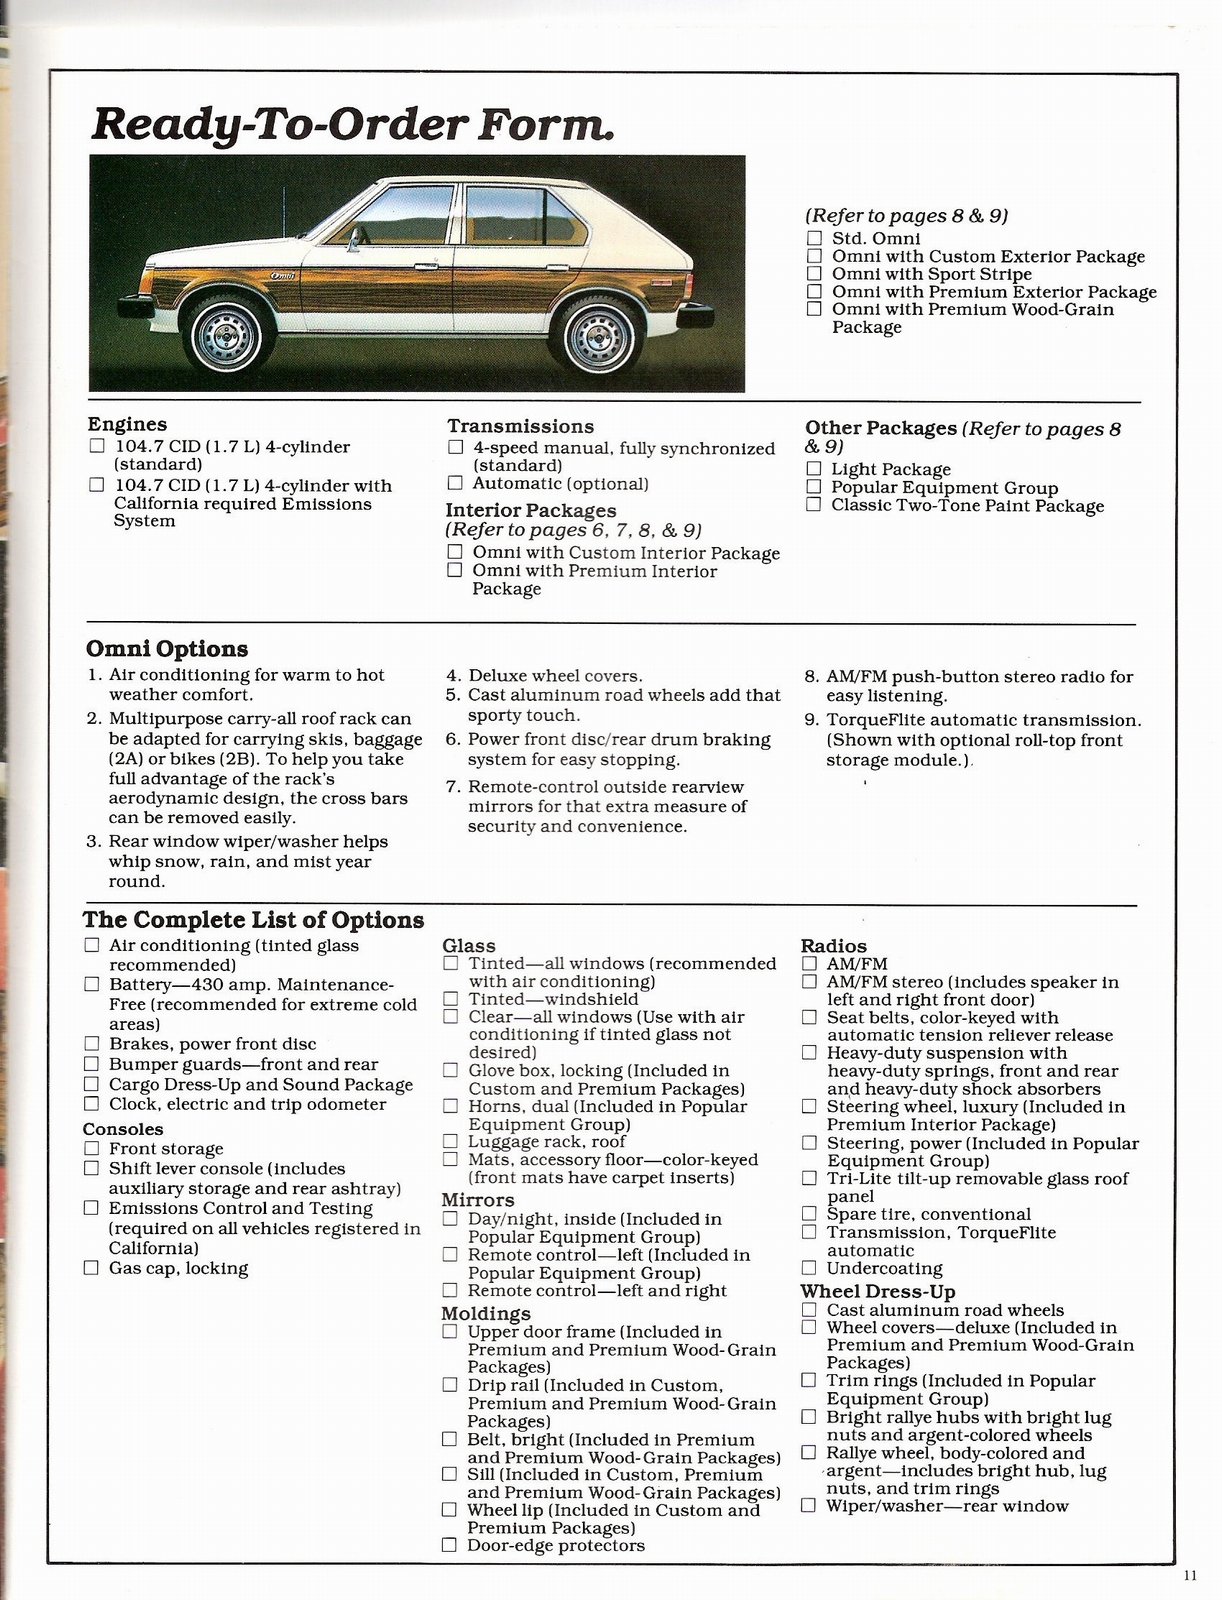 n_1979 Dodge Omni-11.jpg